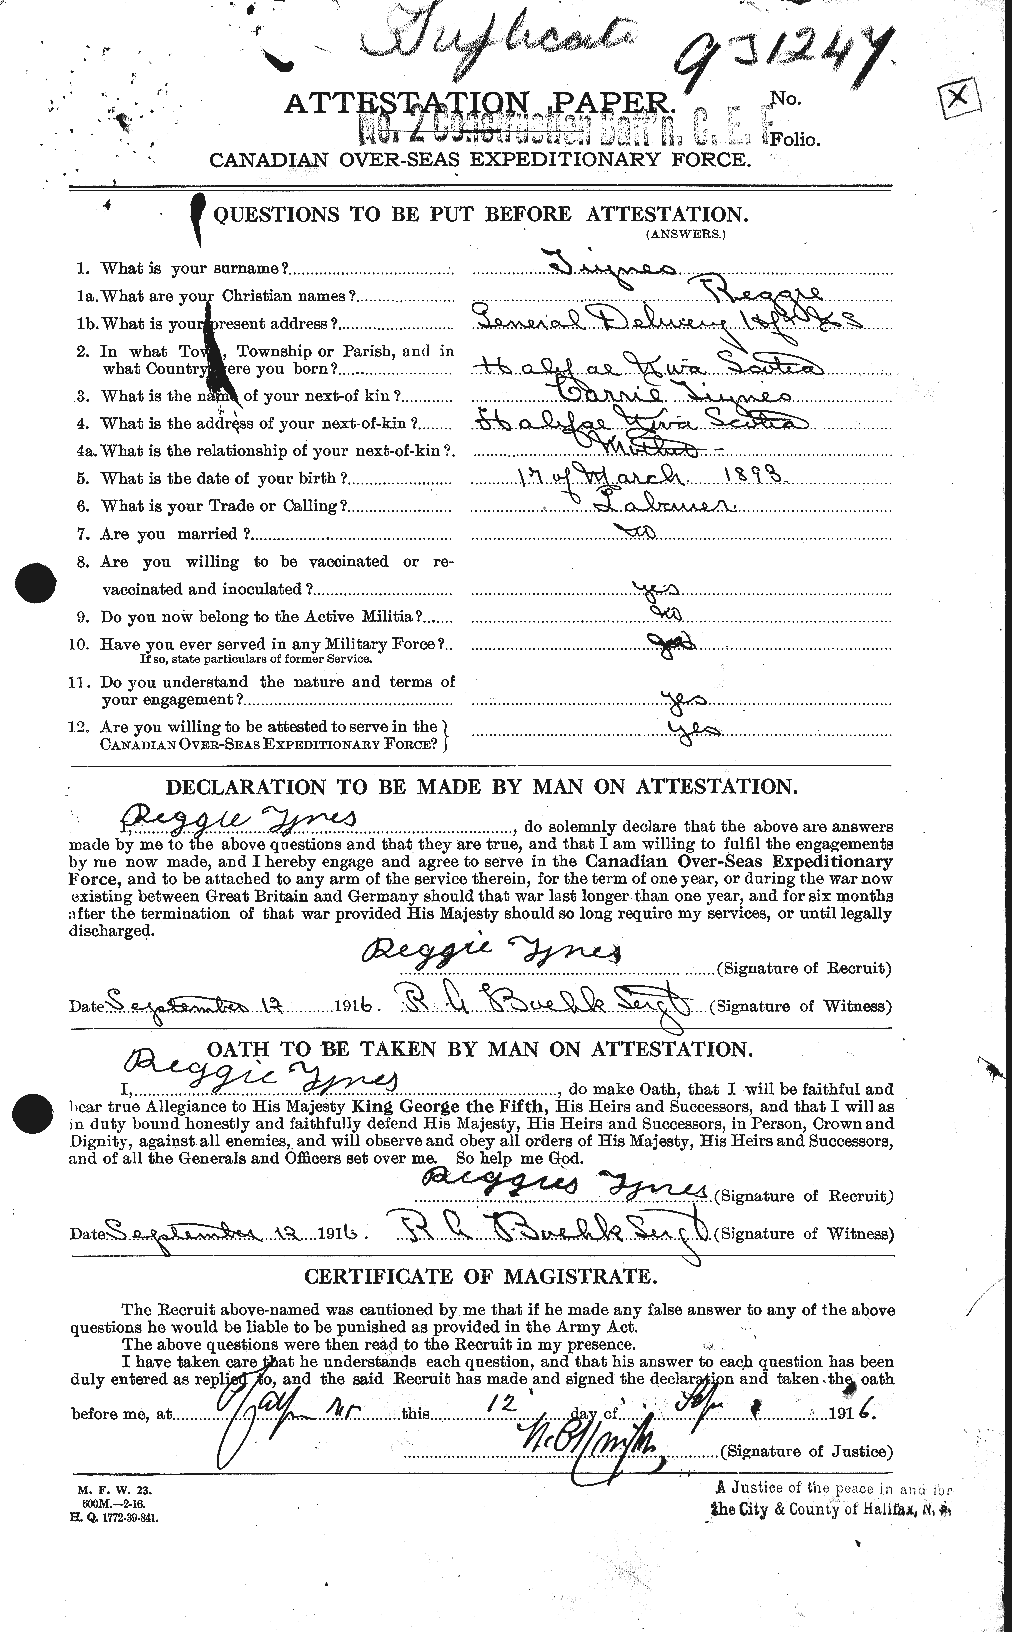 Dossiers du Personnel de la Première Guerre mondiale - CEC 644540a